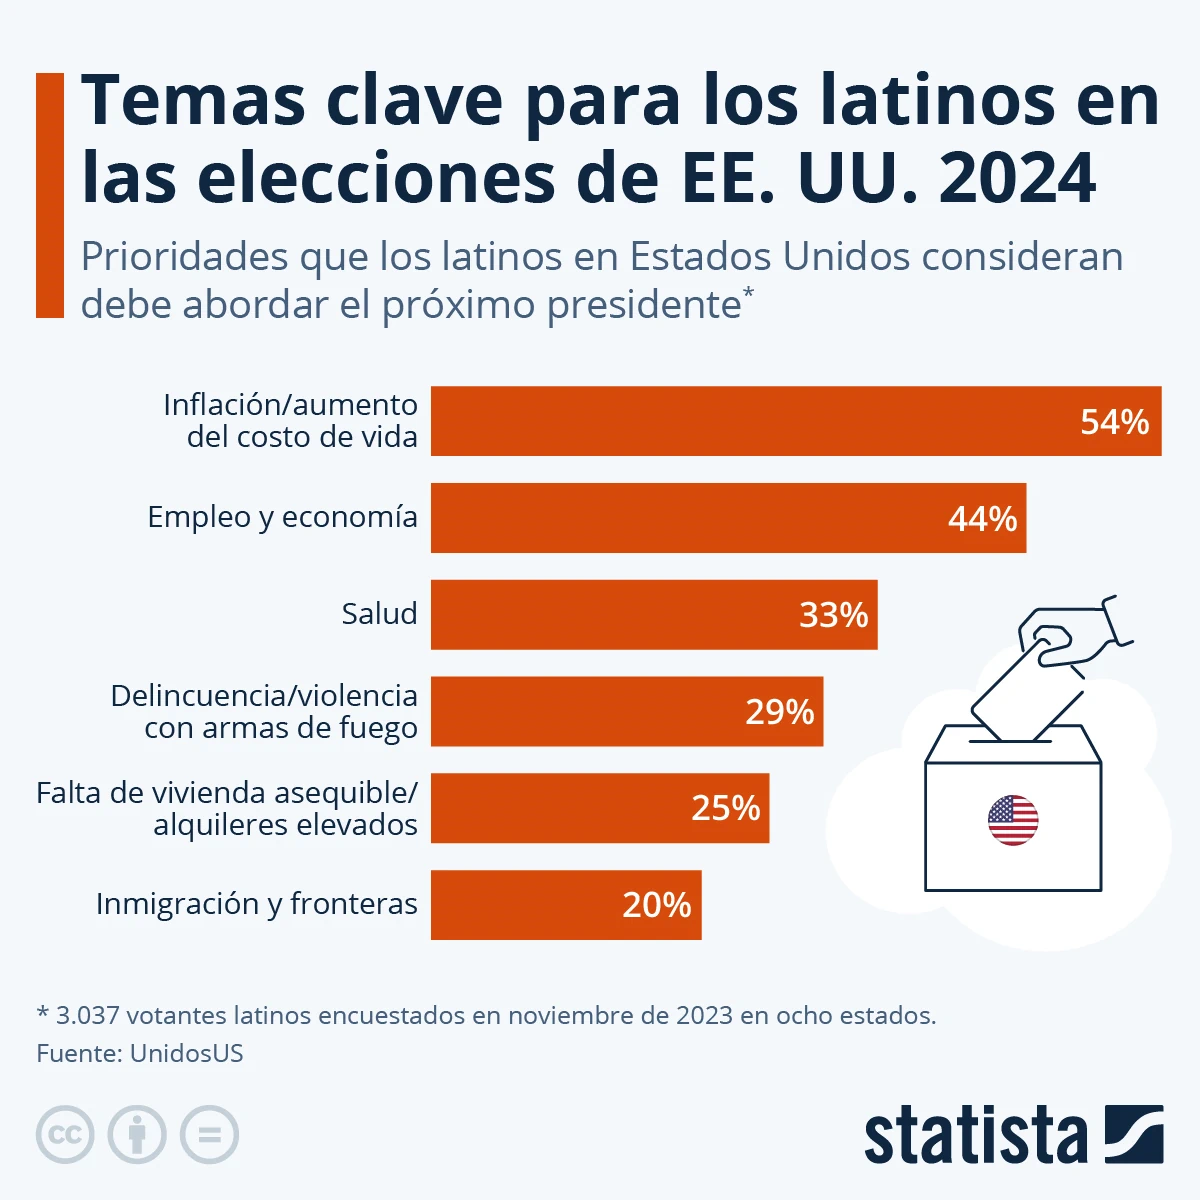 Инфляция и безработица: ключевые вопросы для латиноамериканцев на выборах в США